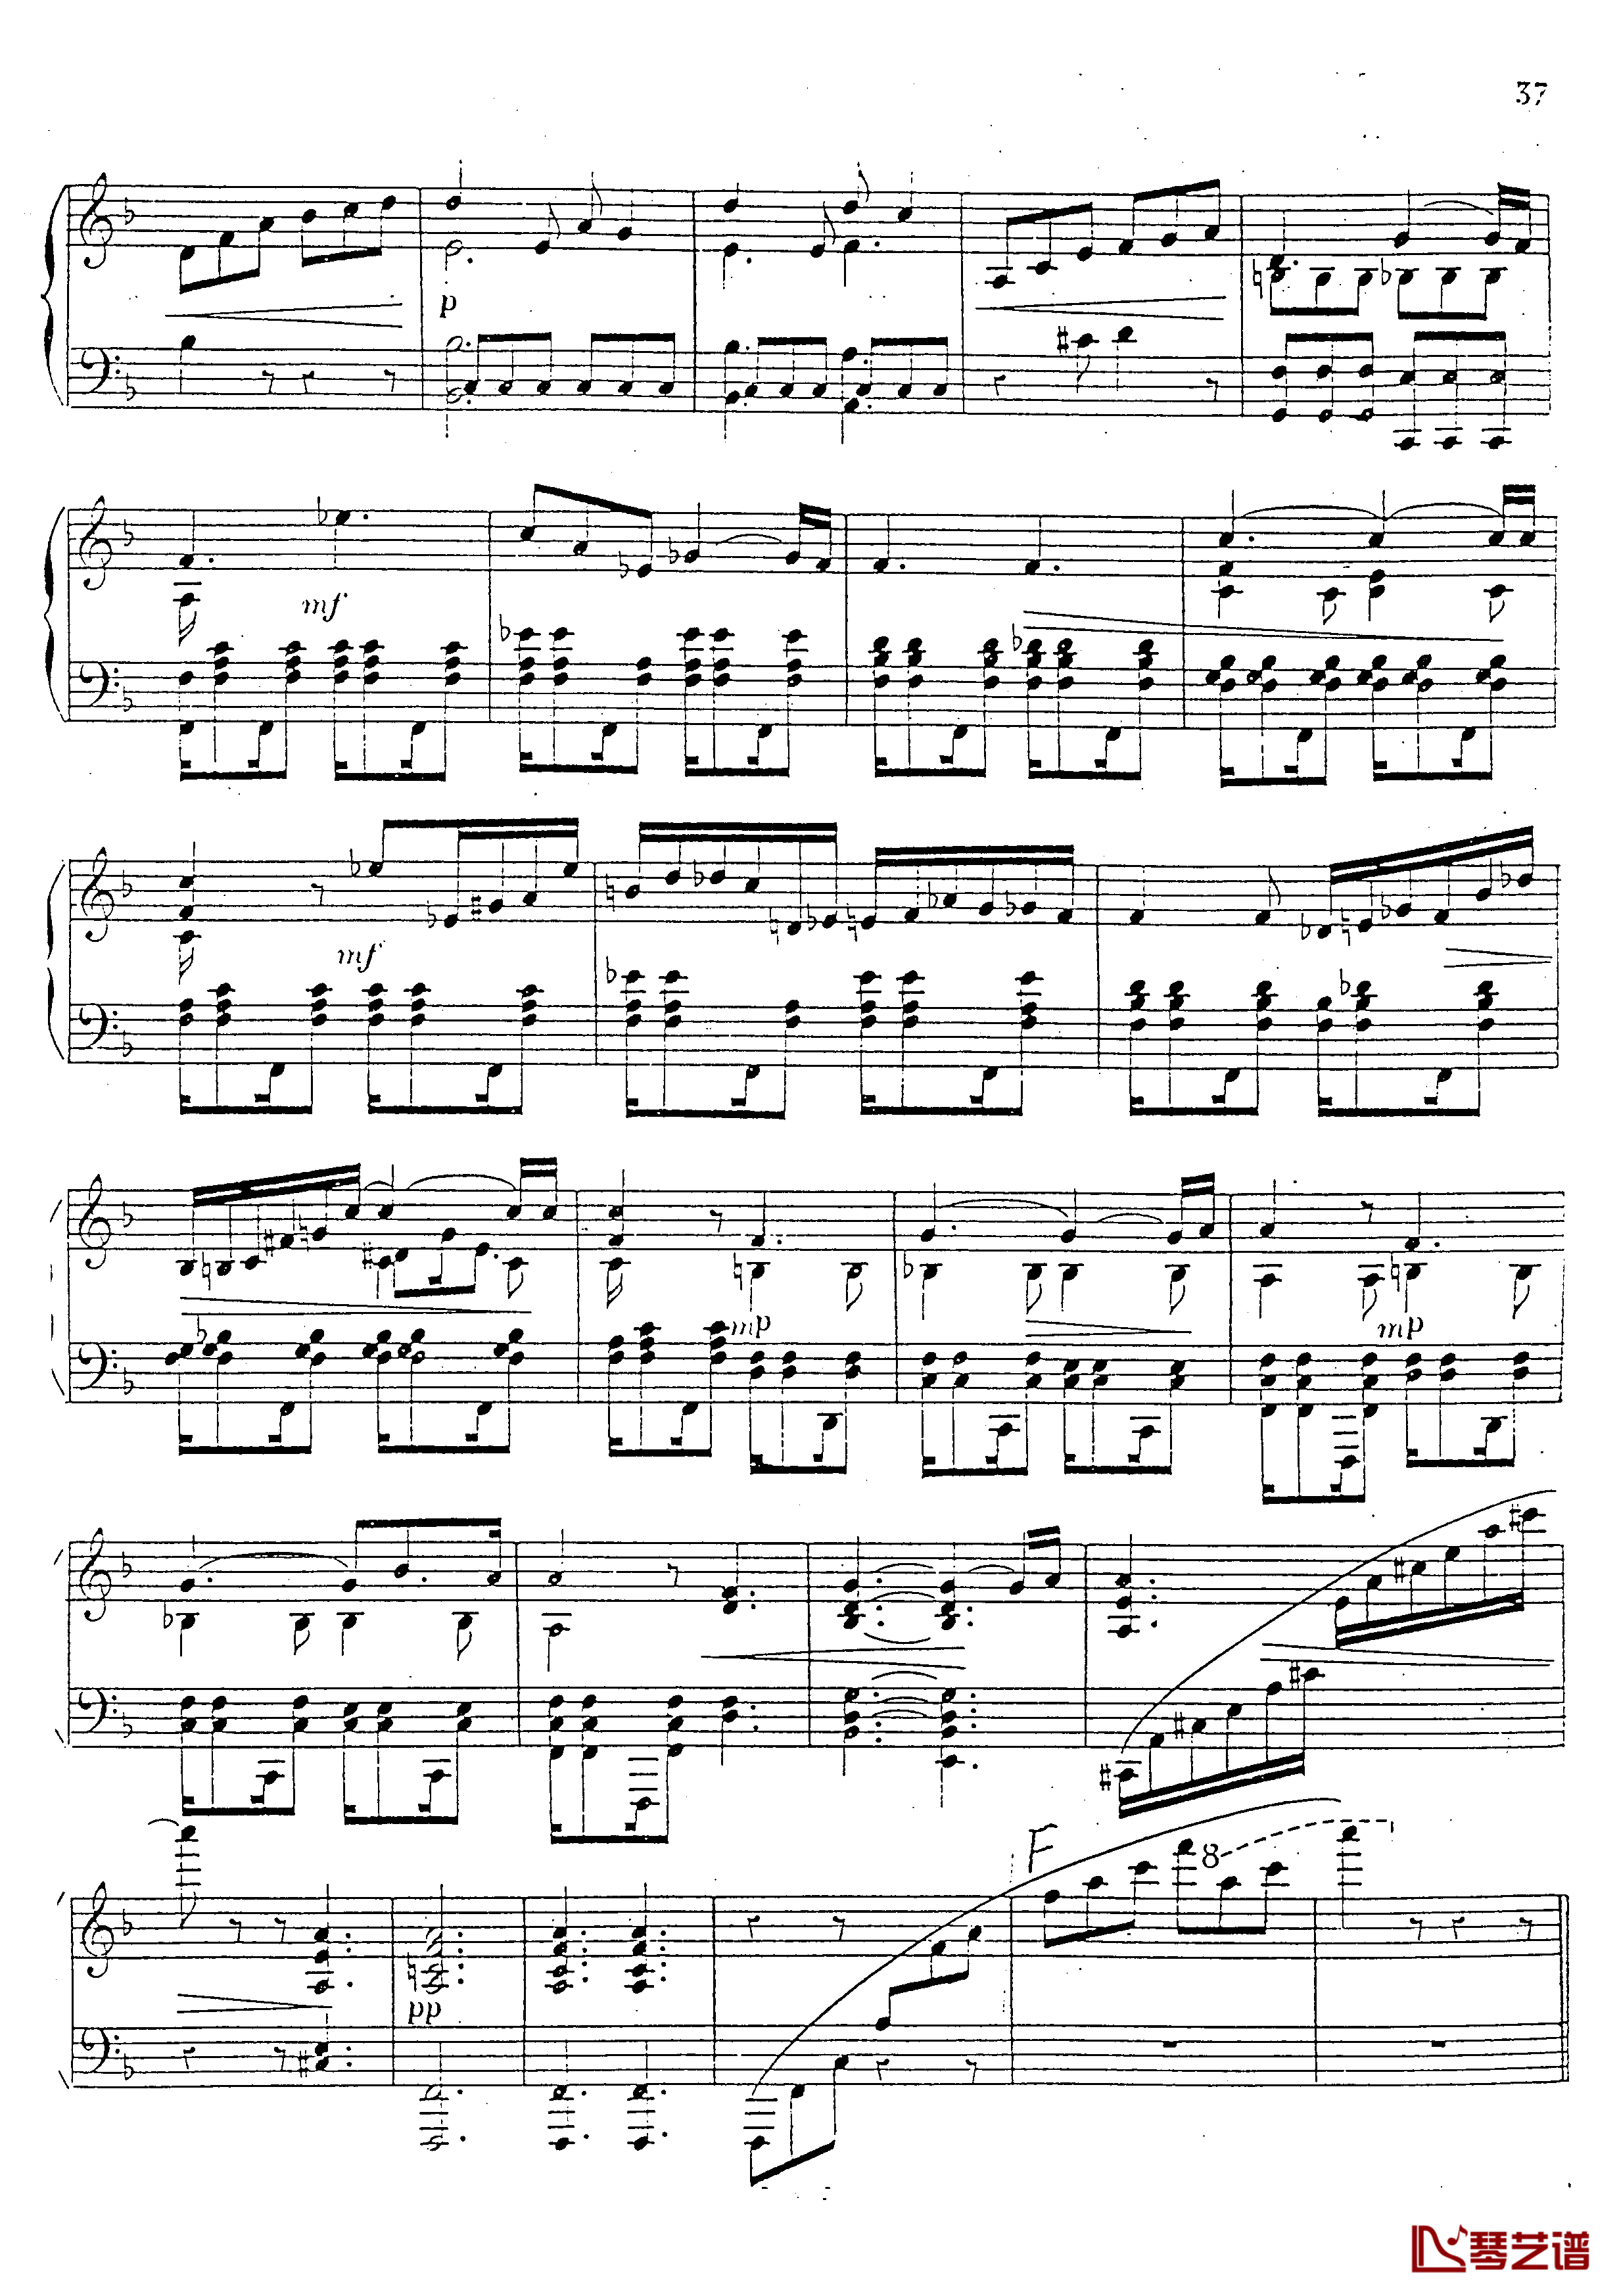 a小调第四钢琴奏鸣曲钢琴谱-安东 鲁宾斯坦- Op.10038